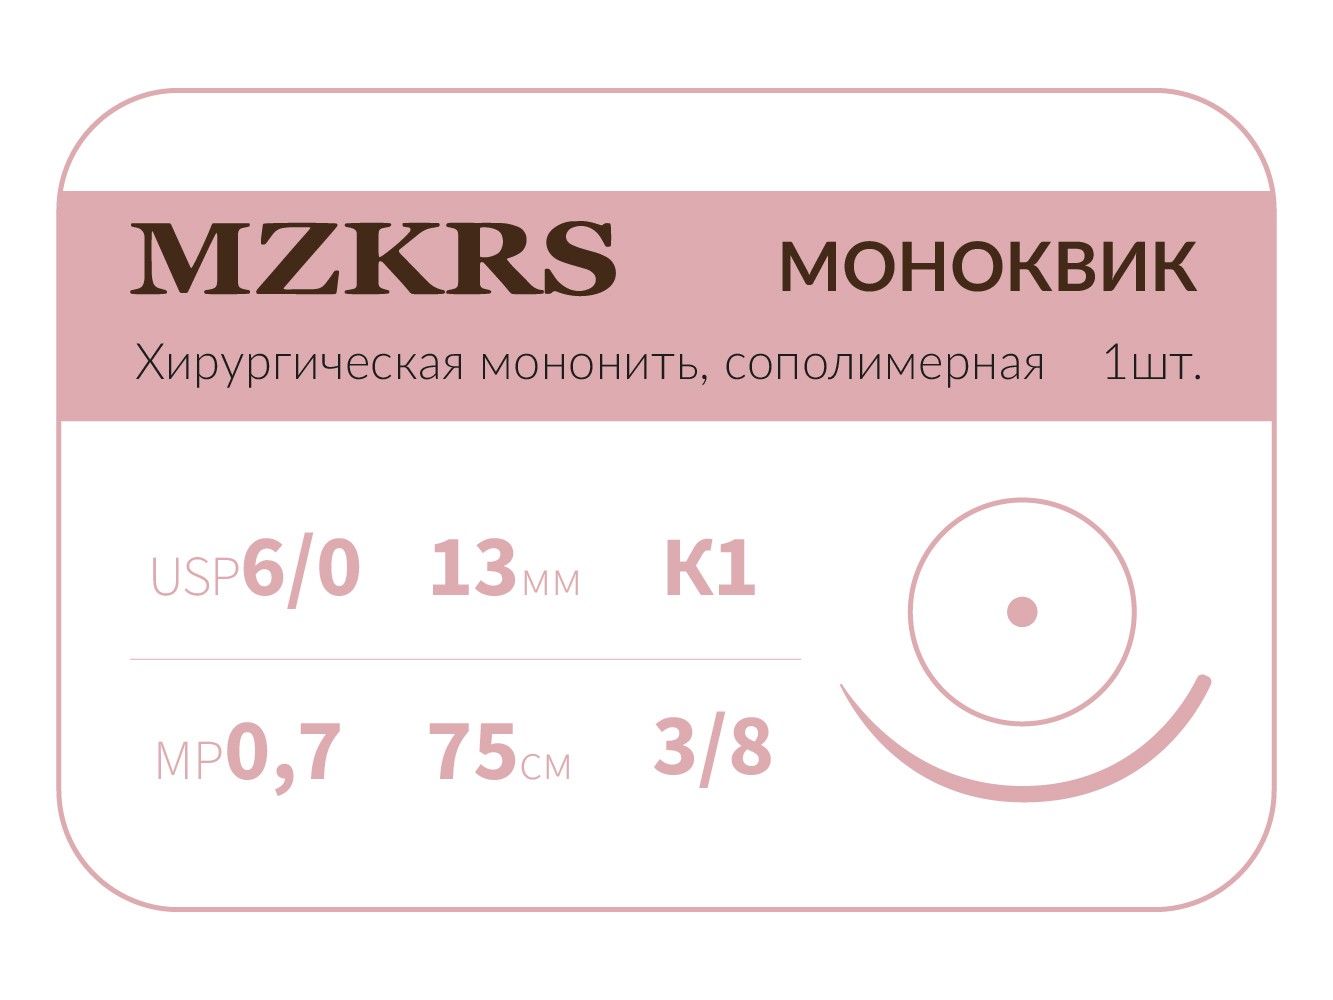 1338К1 Premium-6/0 (0,7)75  МОНК МОНОКВИК хирургическая мононить, сополимерная, колющая игла, MZKRS (Россия)